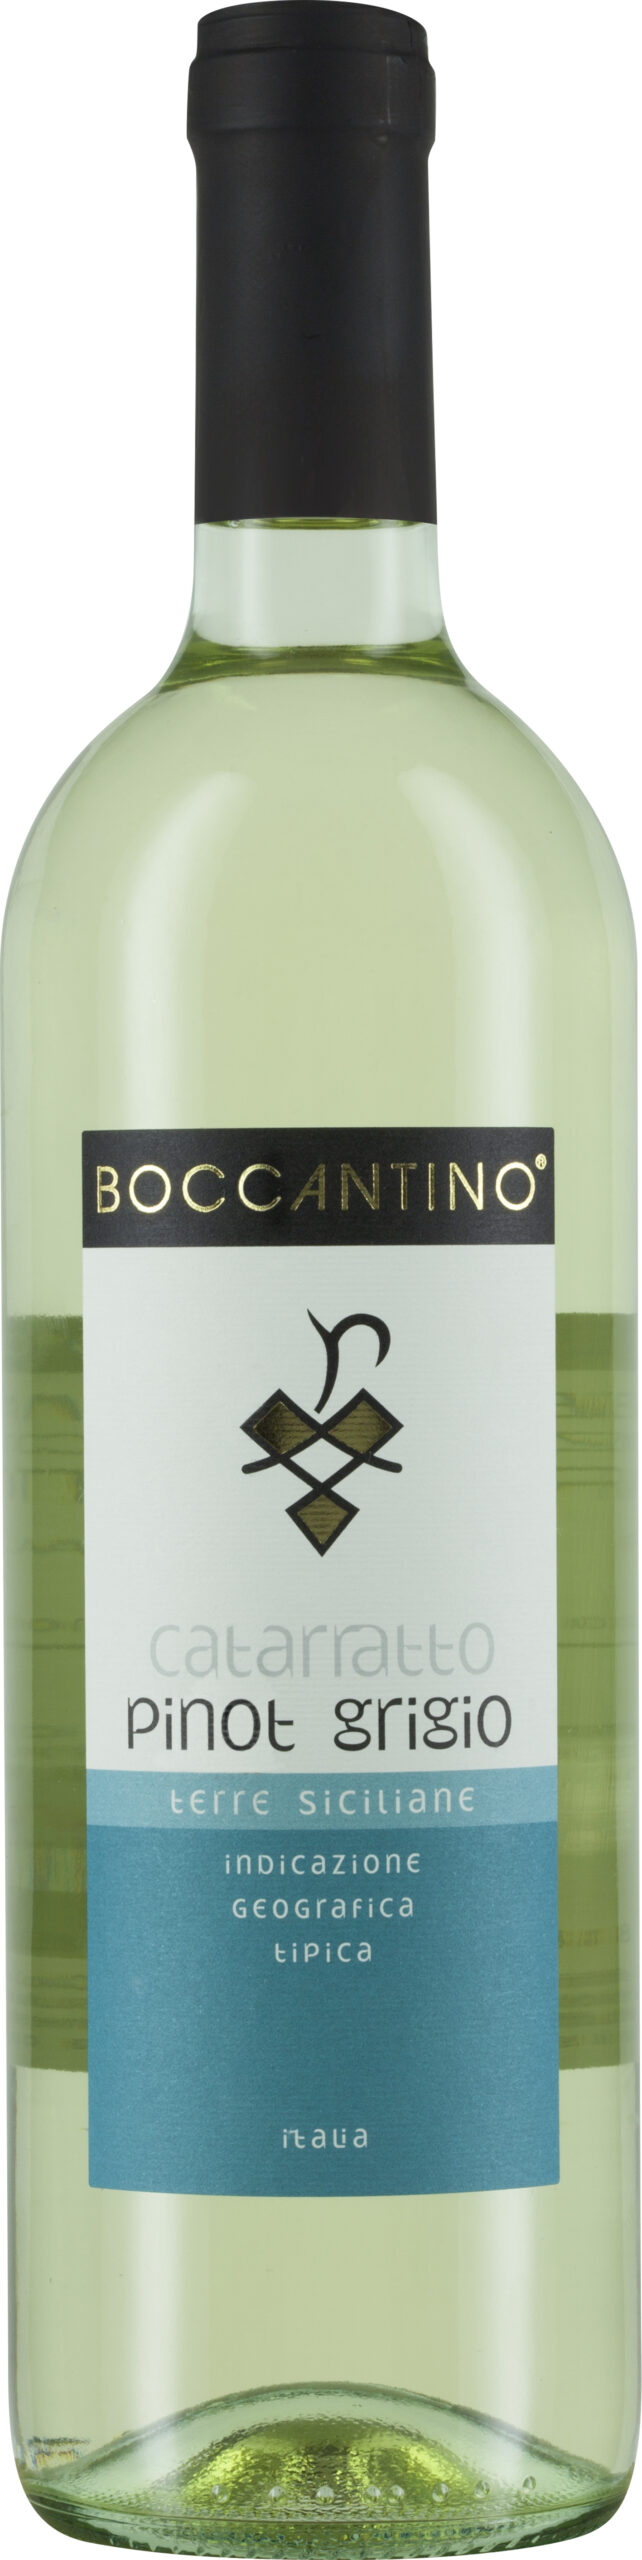 Boccantino, Catarratto Pinot Grigio, Terre Siciliane IGT - Schenk Weine